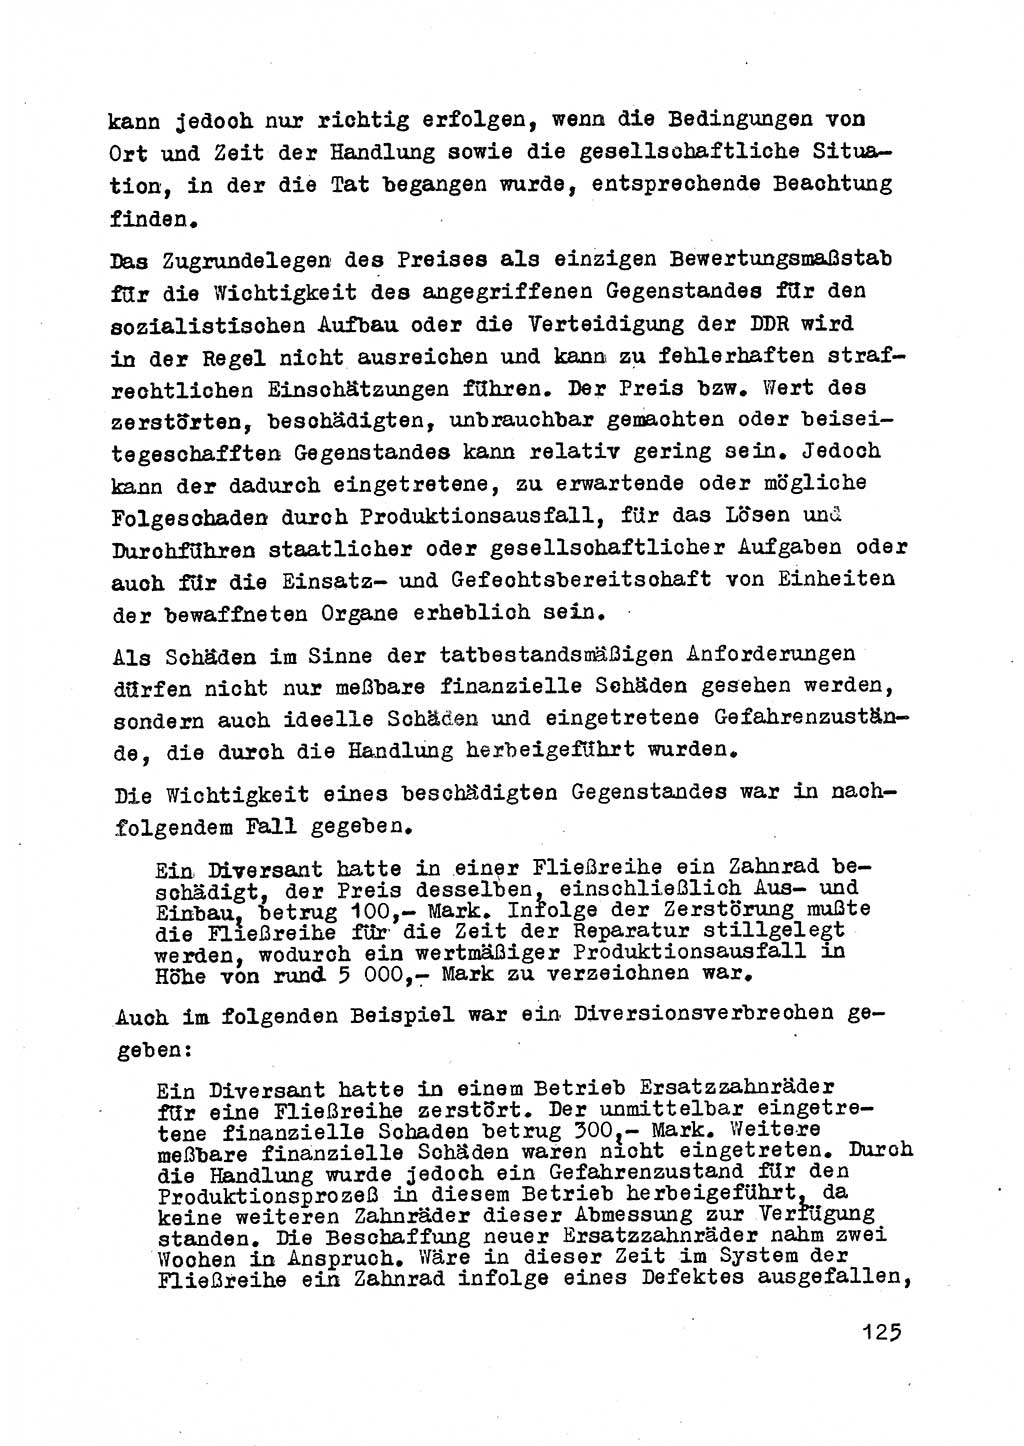 Strafrecht der DDR (Deutsche Demokratische Republik), Besonderer Teil, Lehrmaterial, Heft 2 1969, Seite 125 (Strafr. DDR BT Lehrmat. H. 2 1969, S. 125)